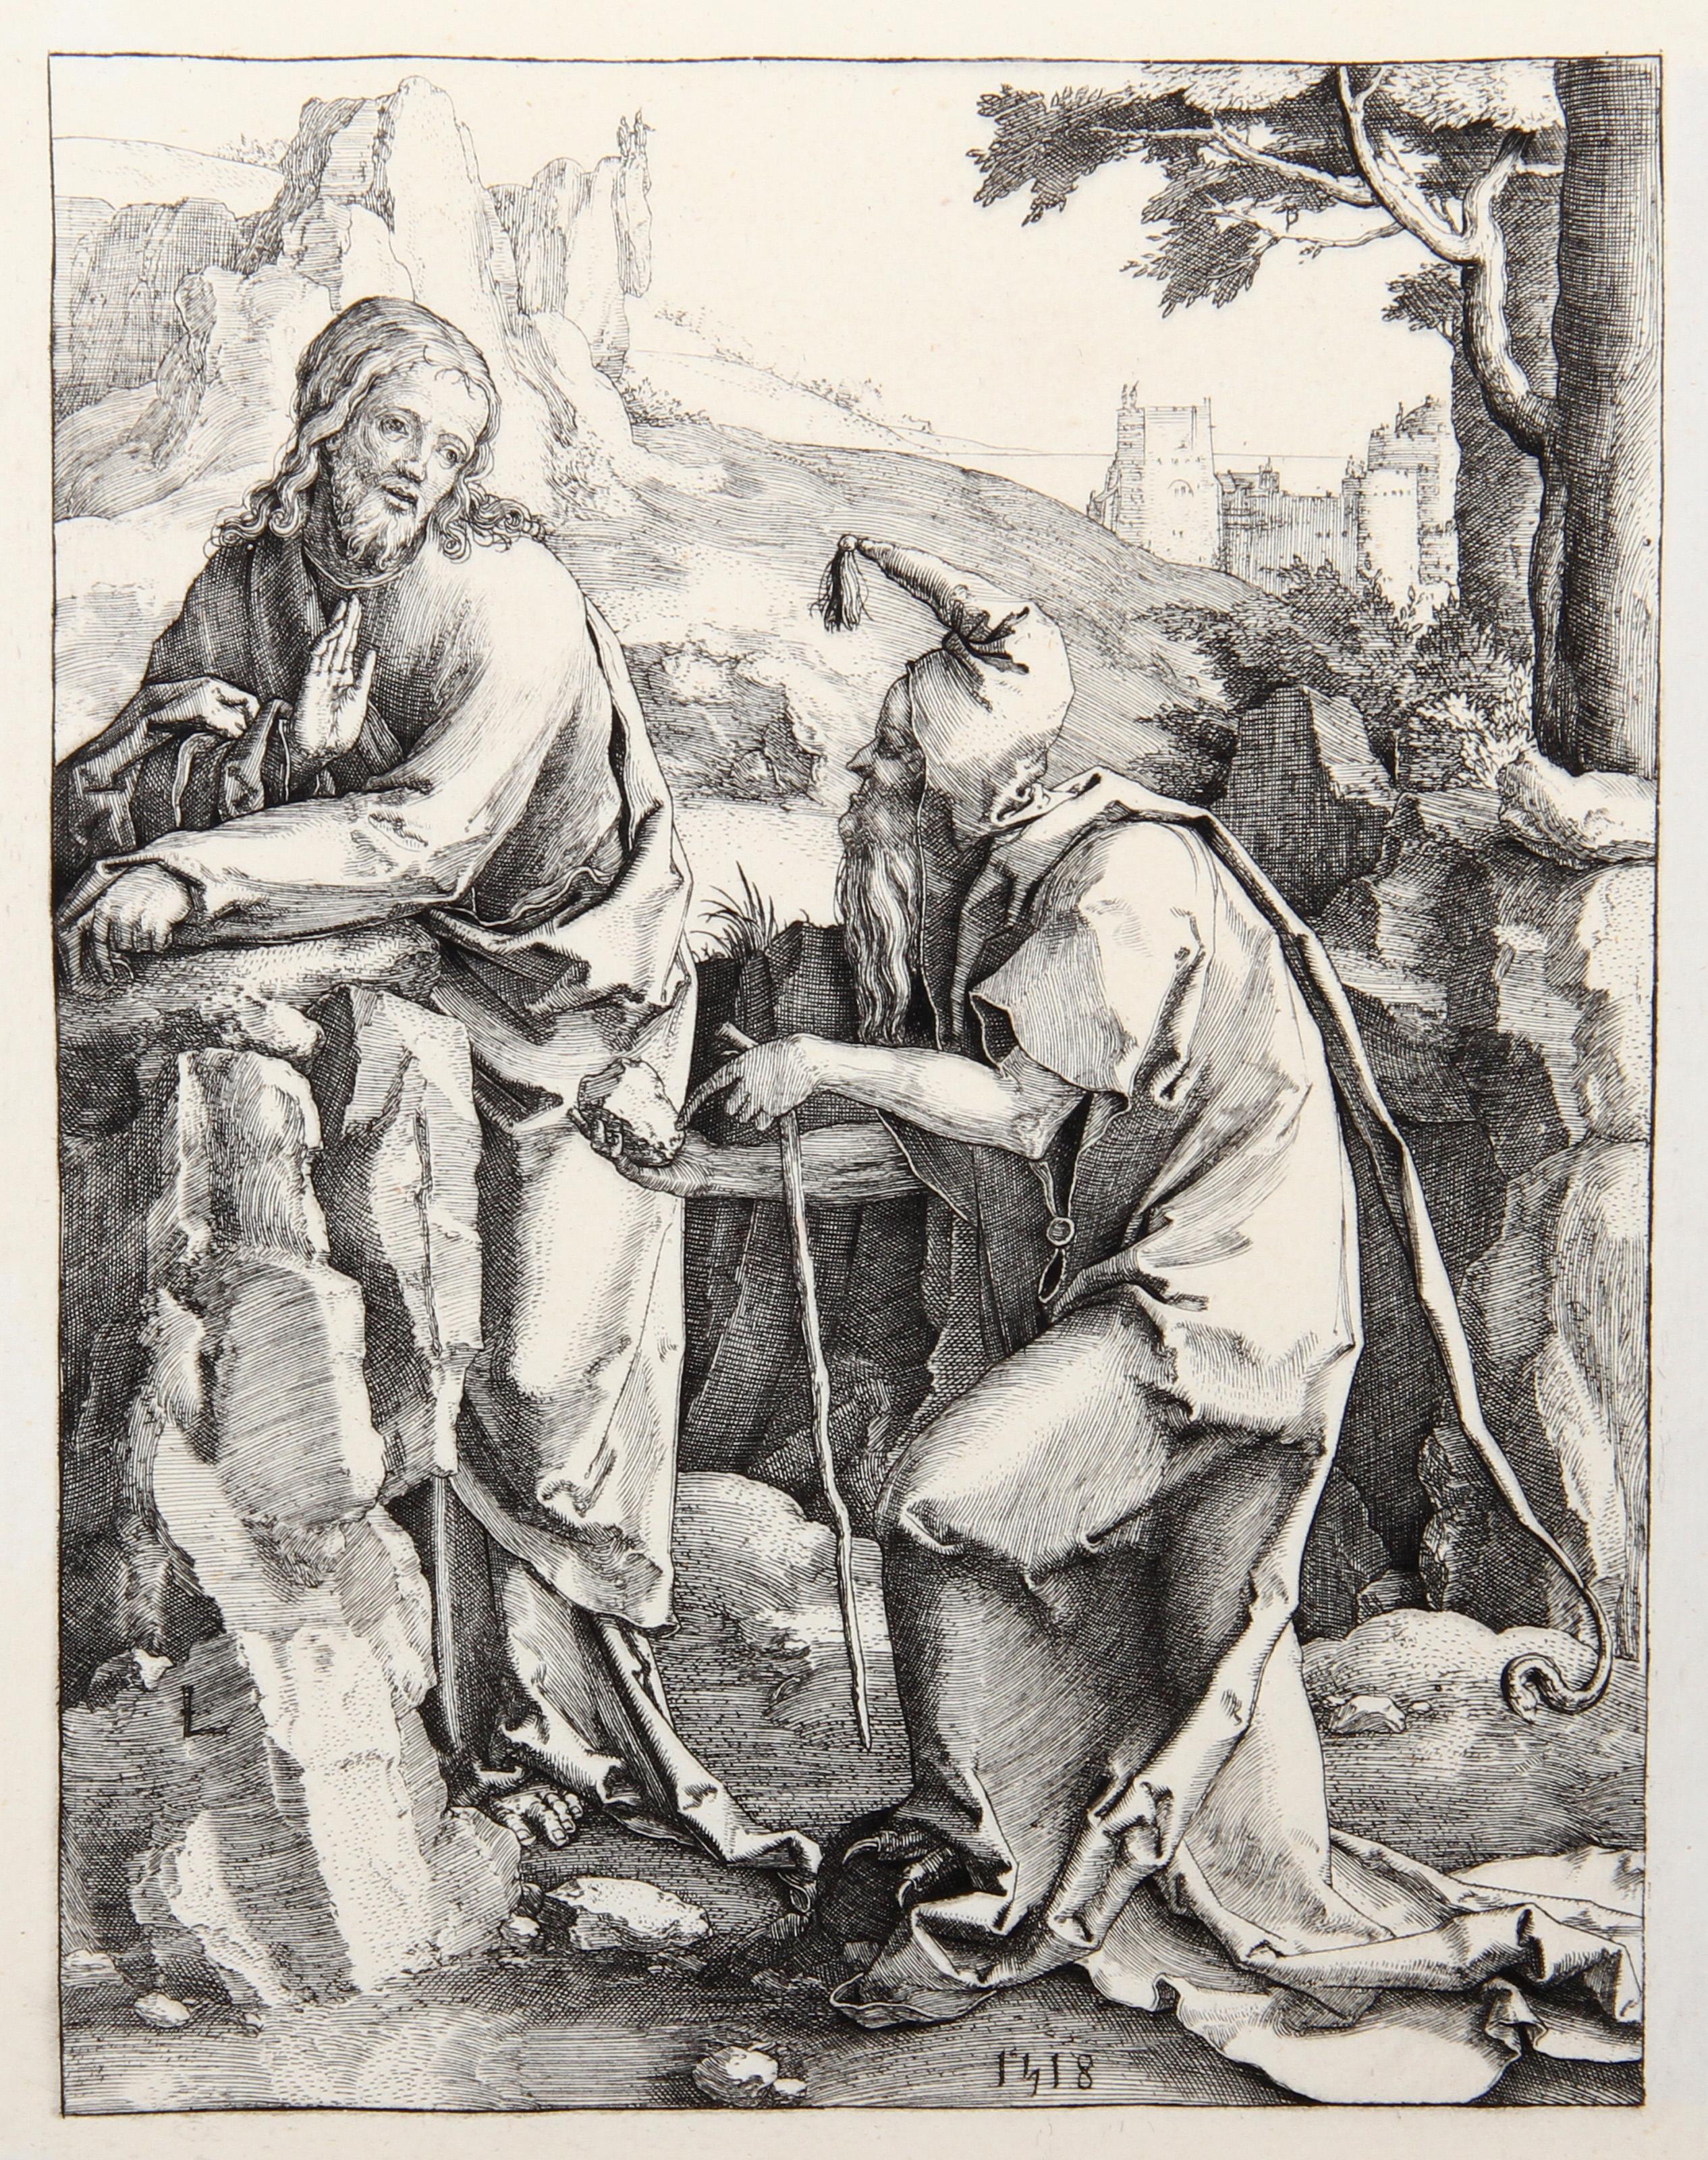 Artist: Lucas van Leyden, After by Amand Durand, Dutch (1494 - 1533) - Jesus Christ tente par le Demon, Year: 1873, Medium: Heliogravure, Size: 7.5  x 5.5 in. (19.05  x 13.97 cm), Printer: Amand Durand, Description: French Engraver and painter